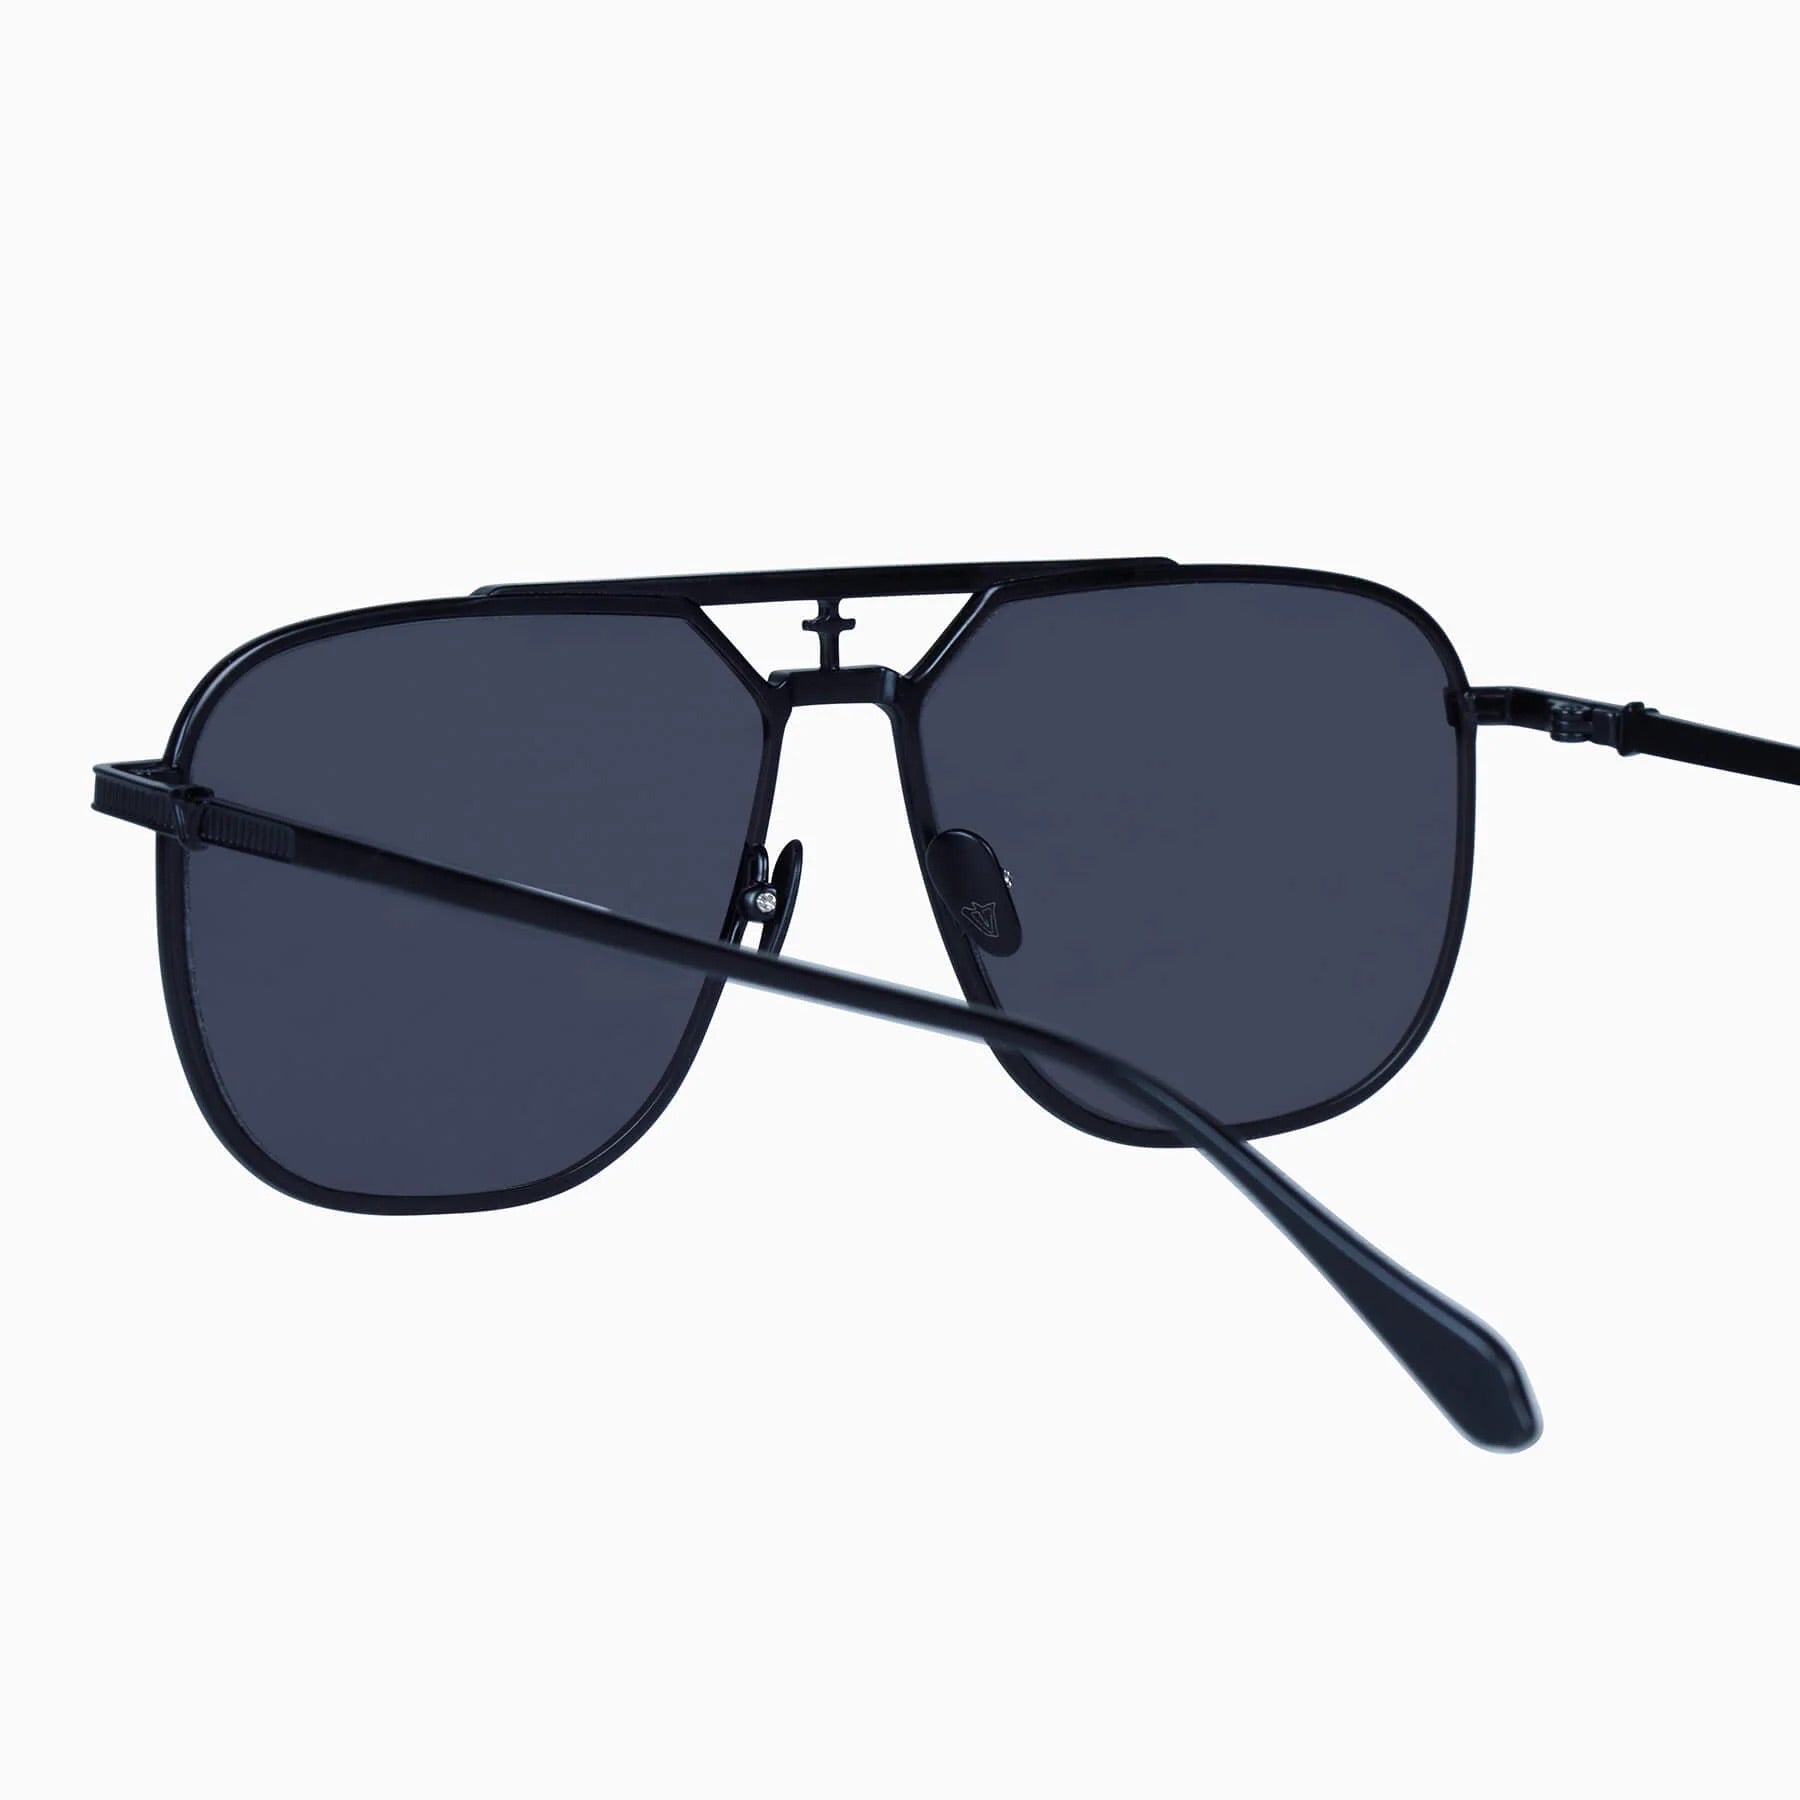 Capita | Sunglasses - Matte Black Titanium / Black Lens